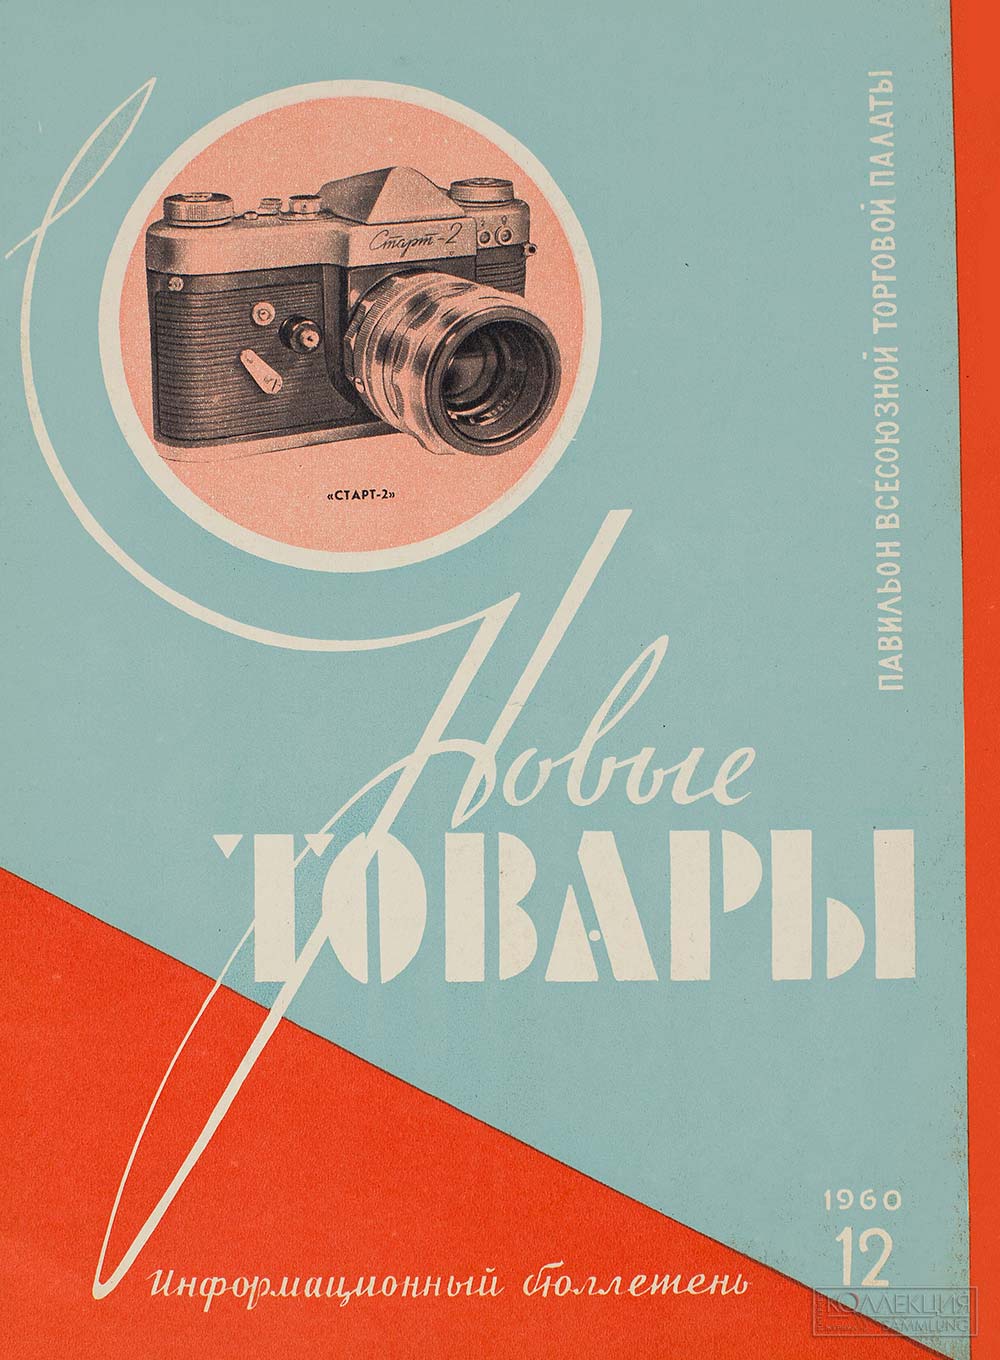 Журнал Новые товары, N12 1960. Из коллекции Московского музея дизайна